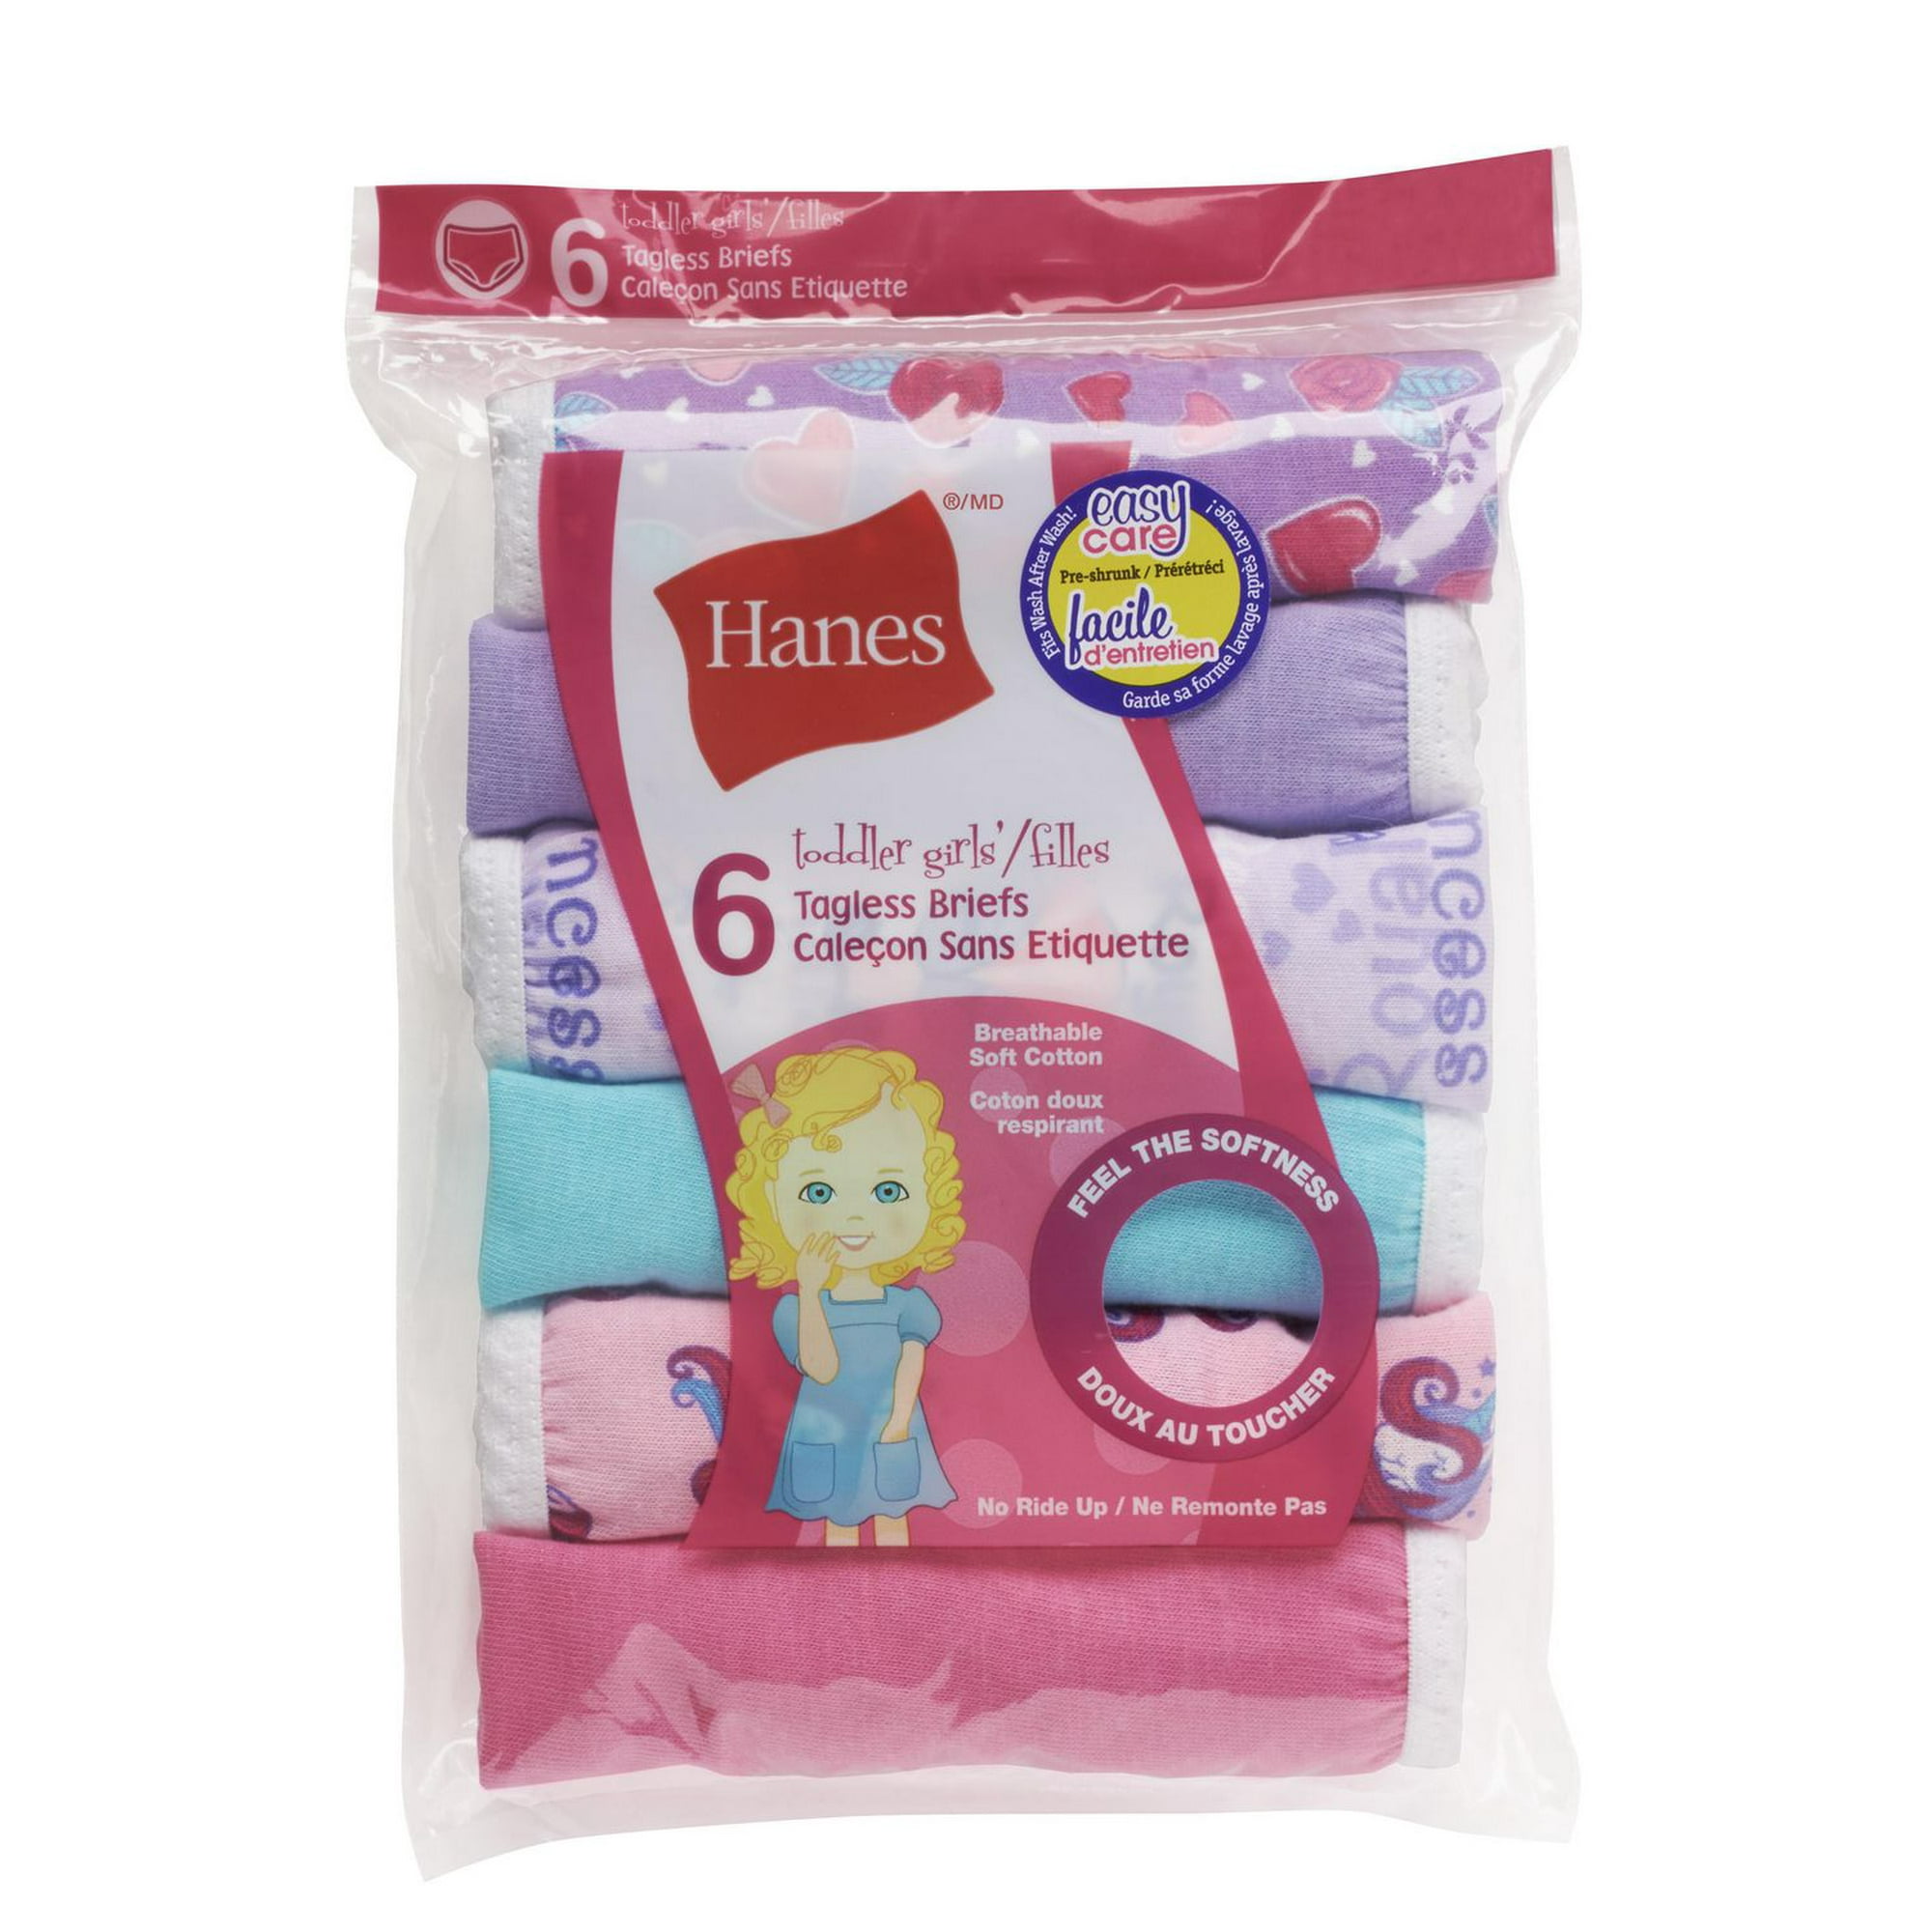 Hanes Girls' Cotton Brief Underwear, 6-Pack